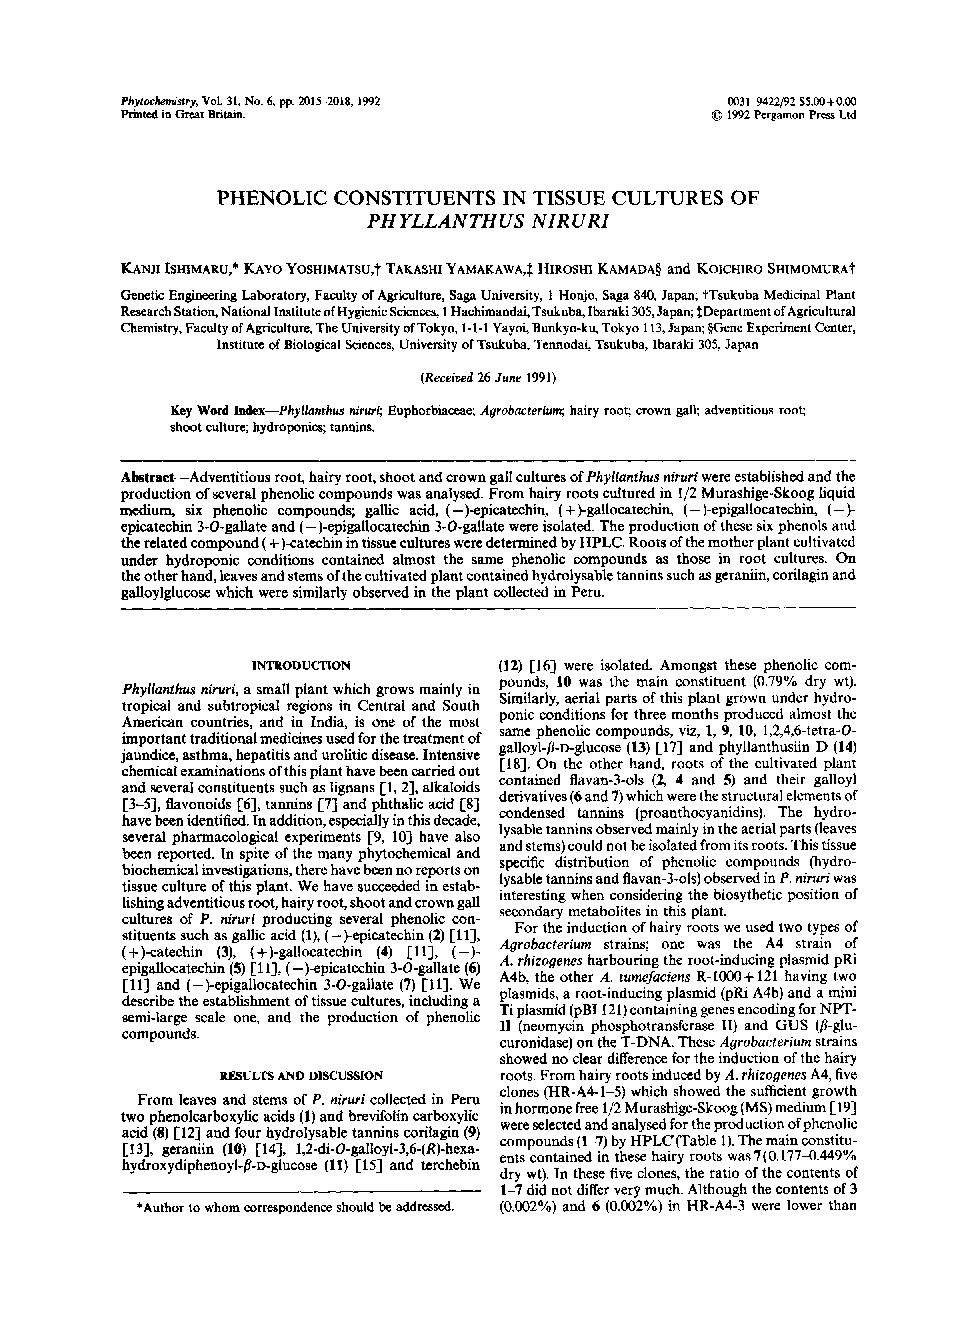 Phenolic constituents in tissue cultures of Phyllanthus niruri